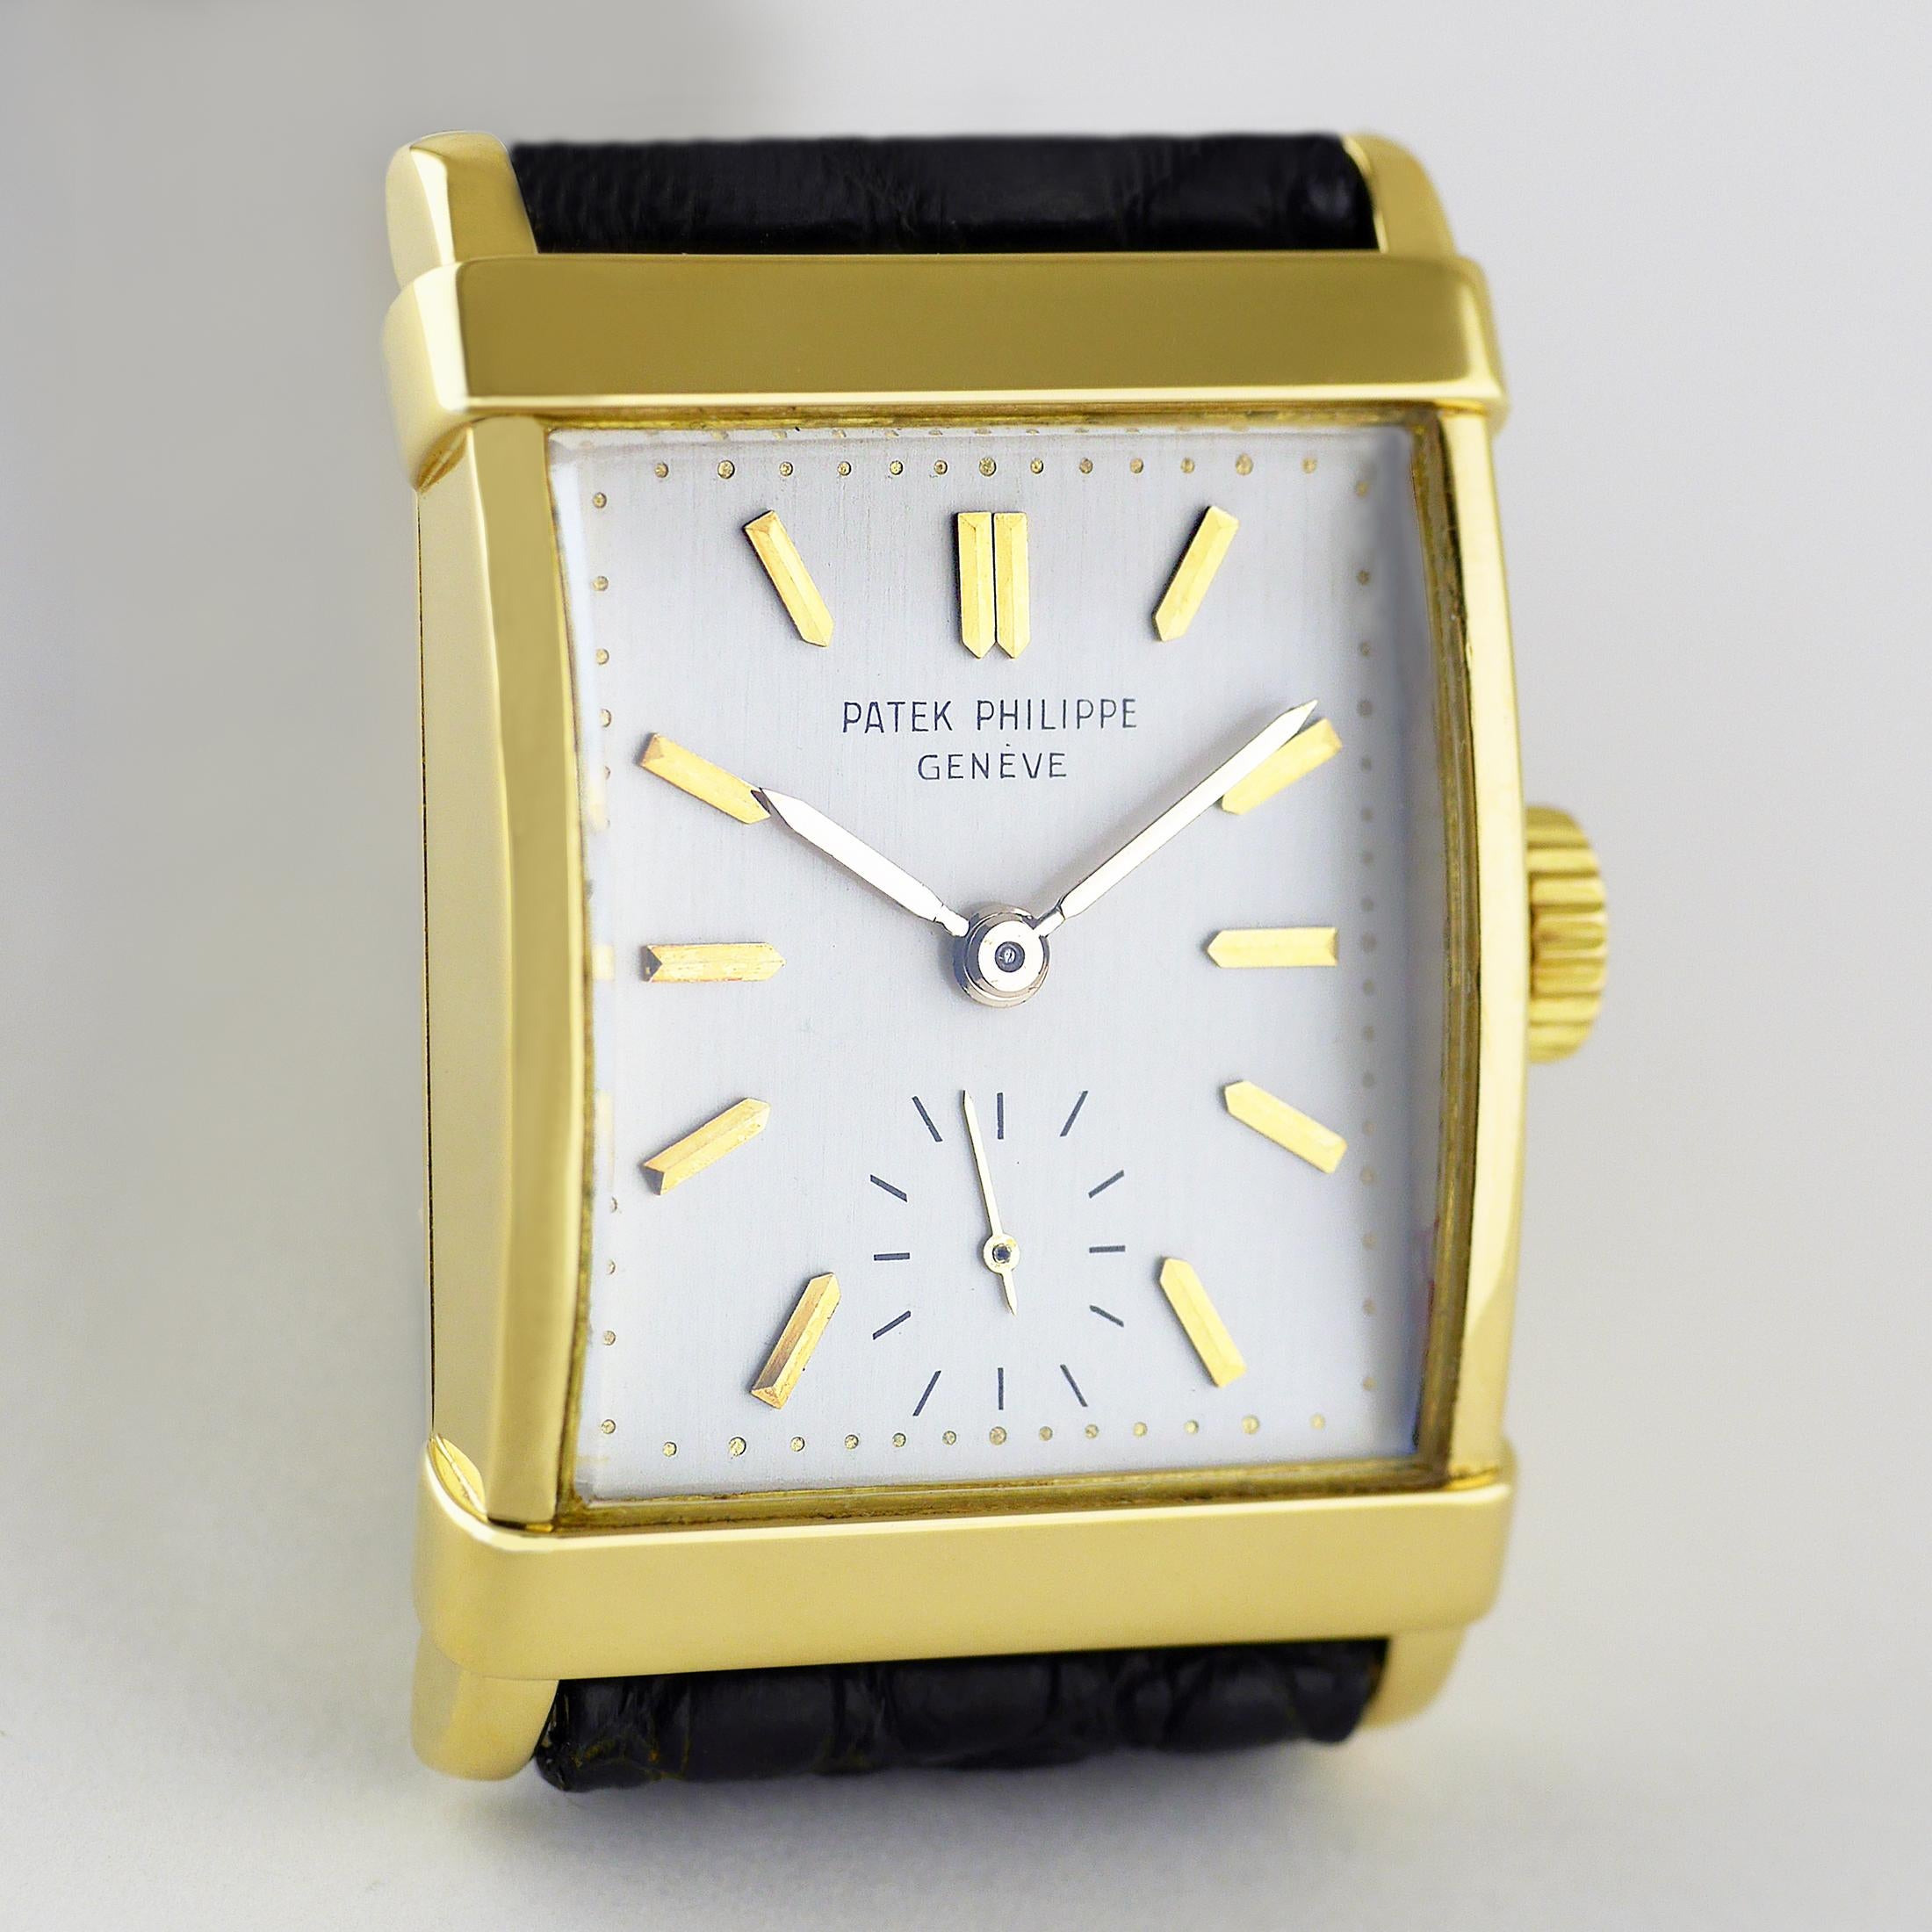 Eine elegante, feine und seltene Vintage-Armbanduhr von Patek Philippe aus dem Jahr 1964.

Das rechteckige 18-Karat-Gehäuse aus Gelbgold mit überlagertem, gestuftem Band an der oberen und unteren Lünette und verjüngten Bandanstößen.

Jewelled,